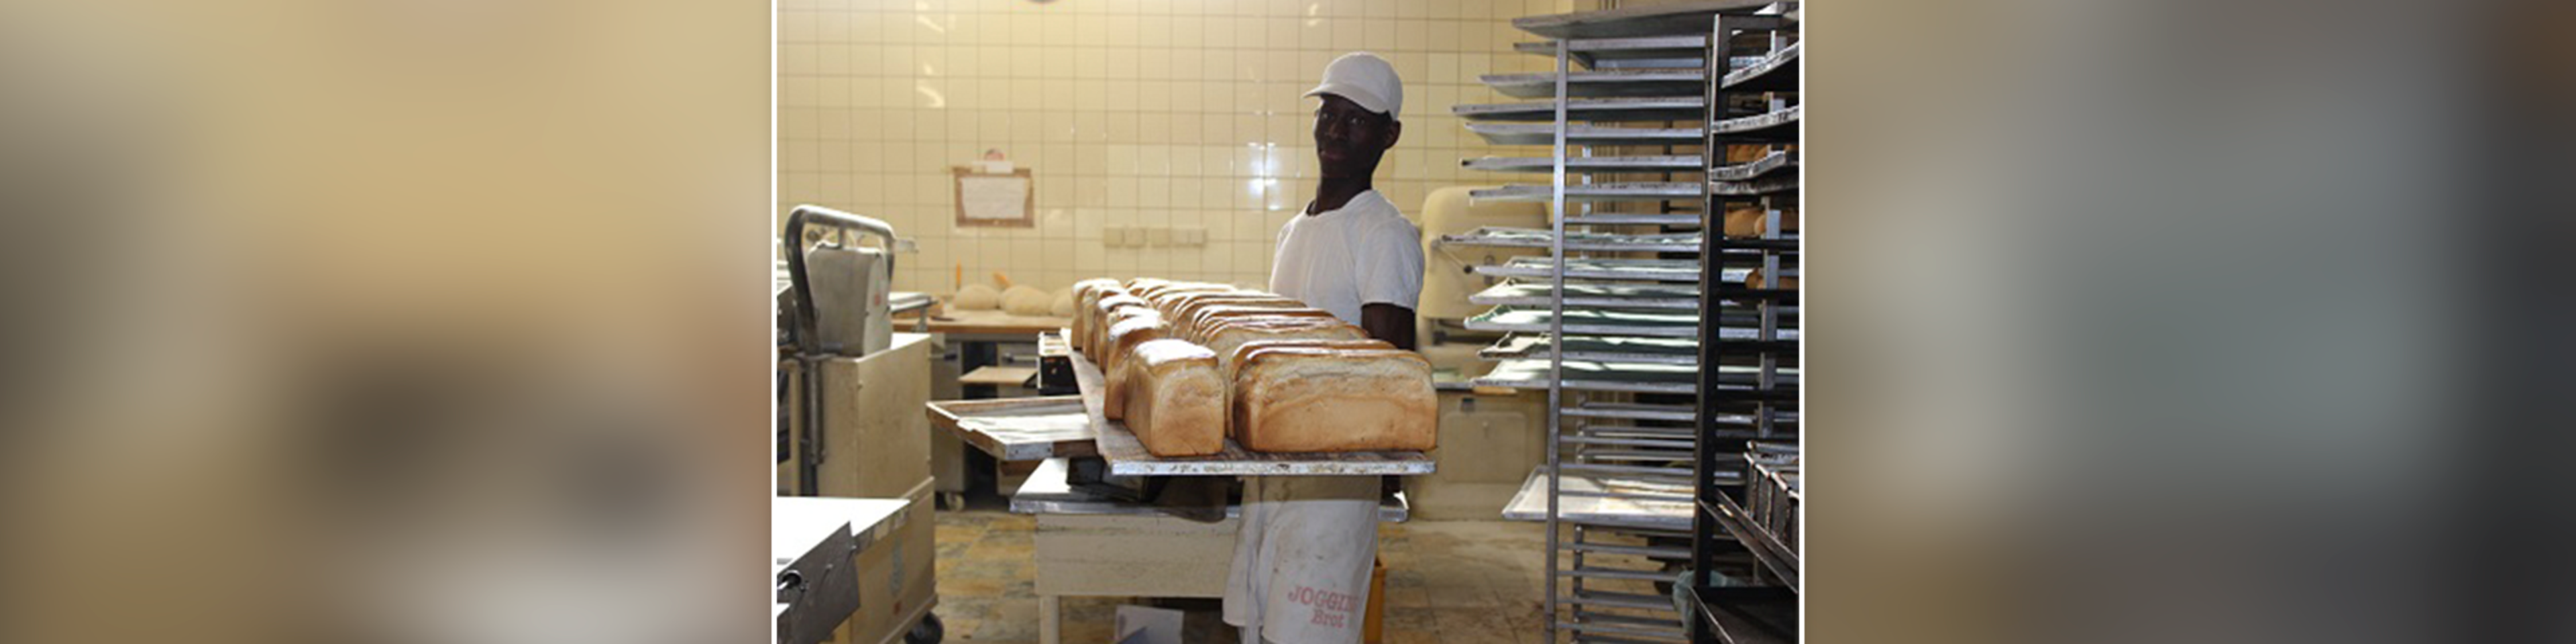 Der 29-jährige Asylbewerber Saidu* in der Bäckerei Strohmaier, die in Mühldorf erfolgreich junge Geflüchtete ausbildet. | © Caritas Mühldorf | Andrea Langstein